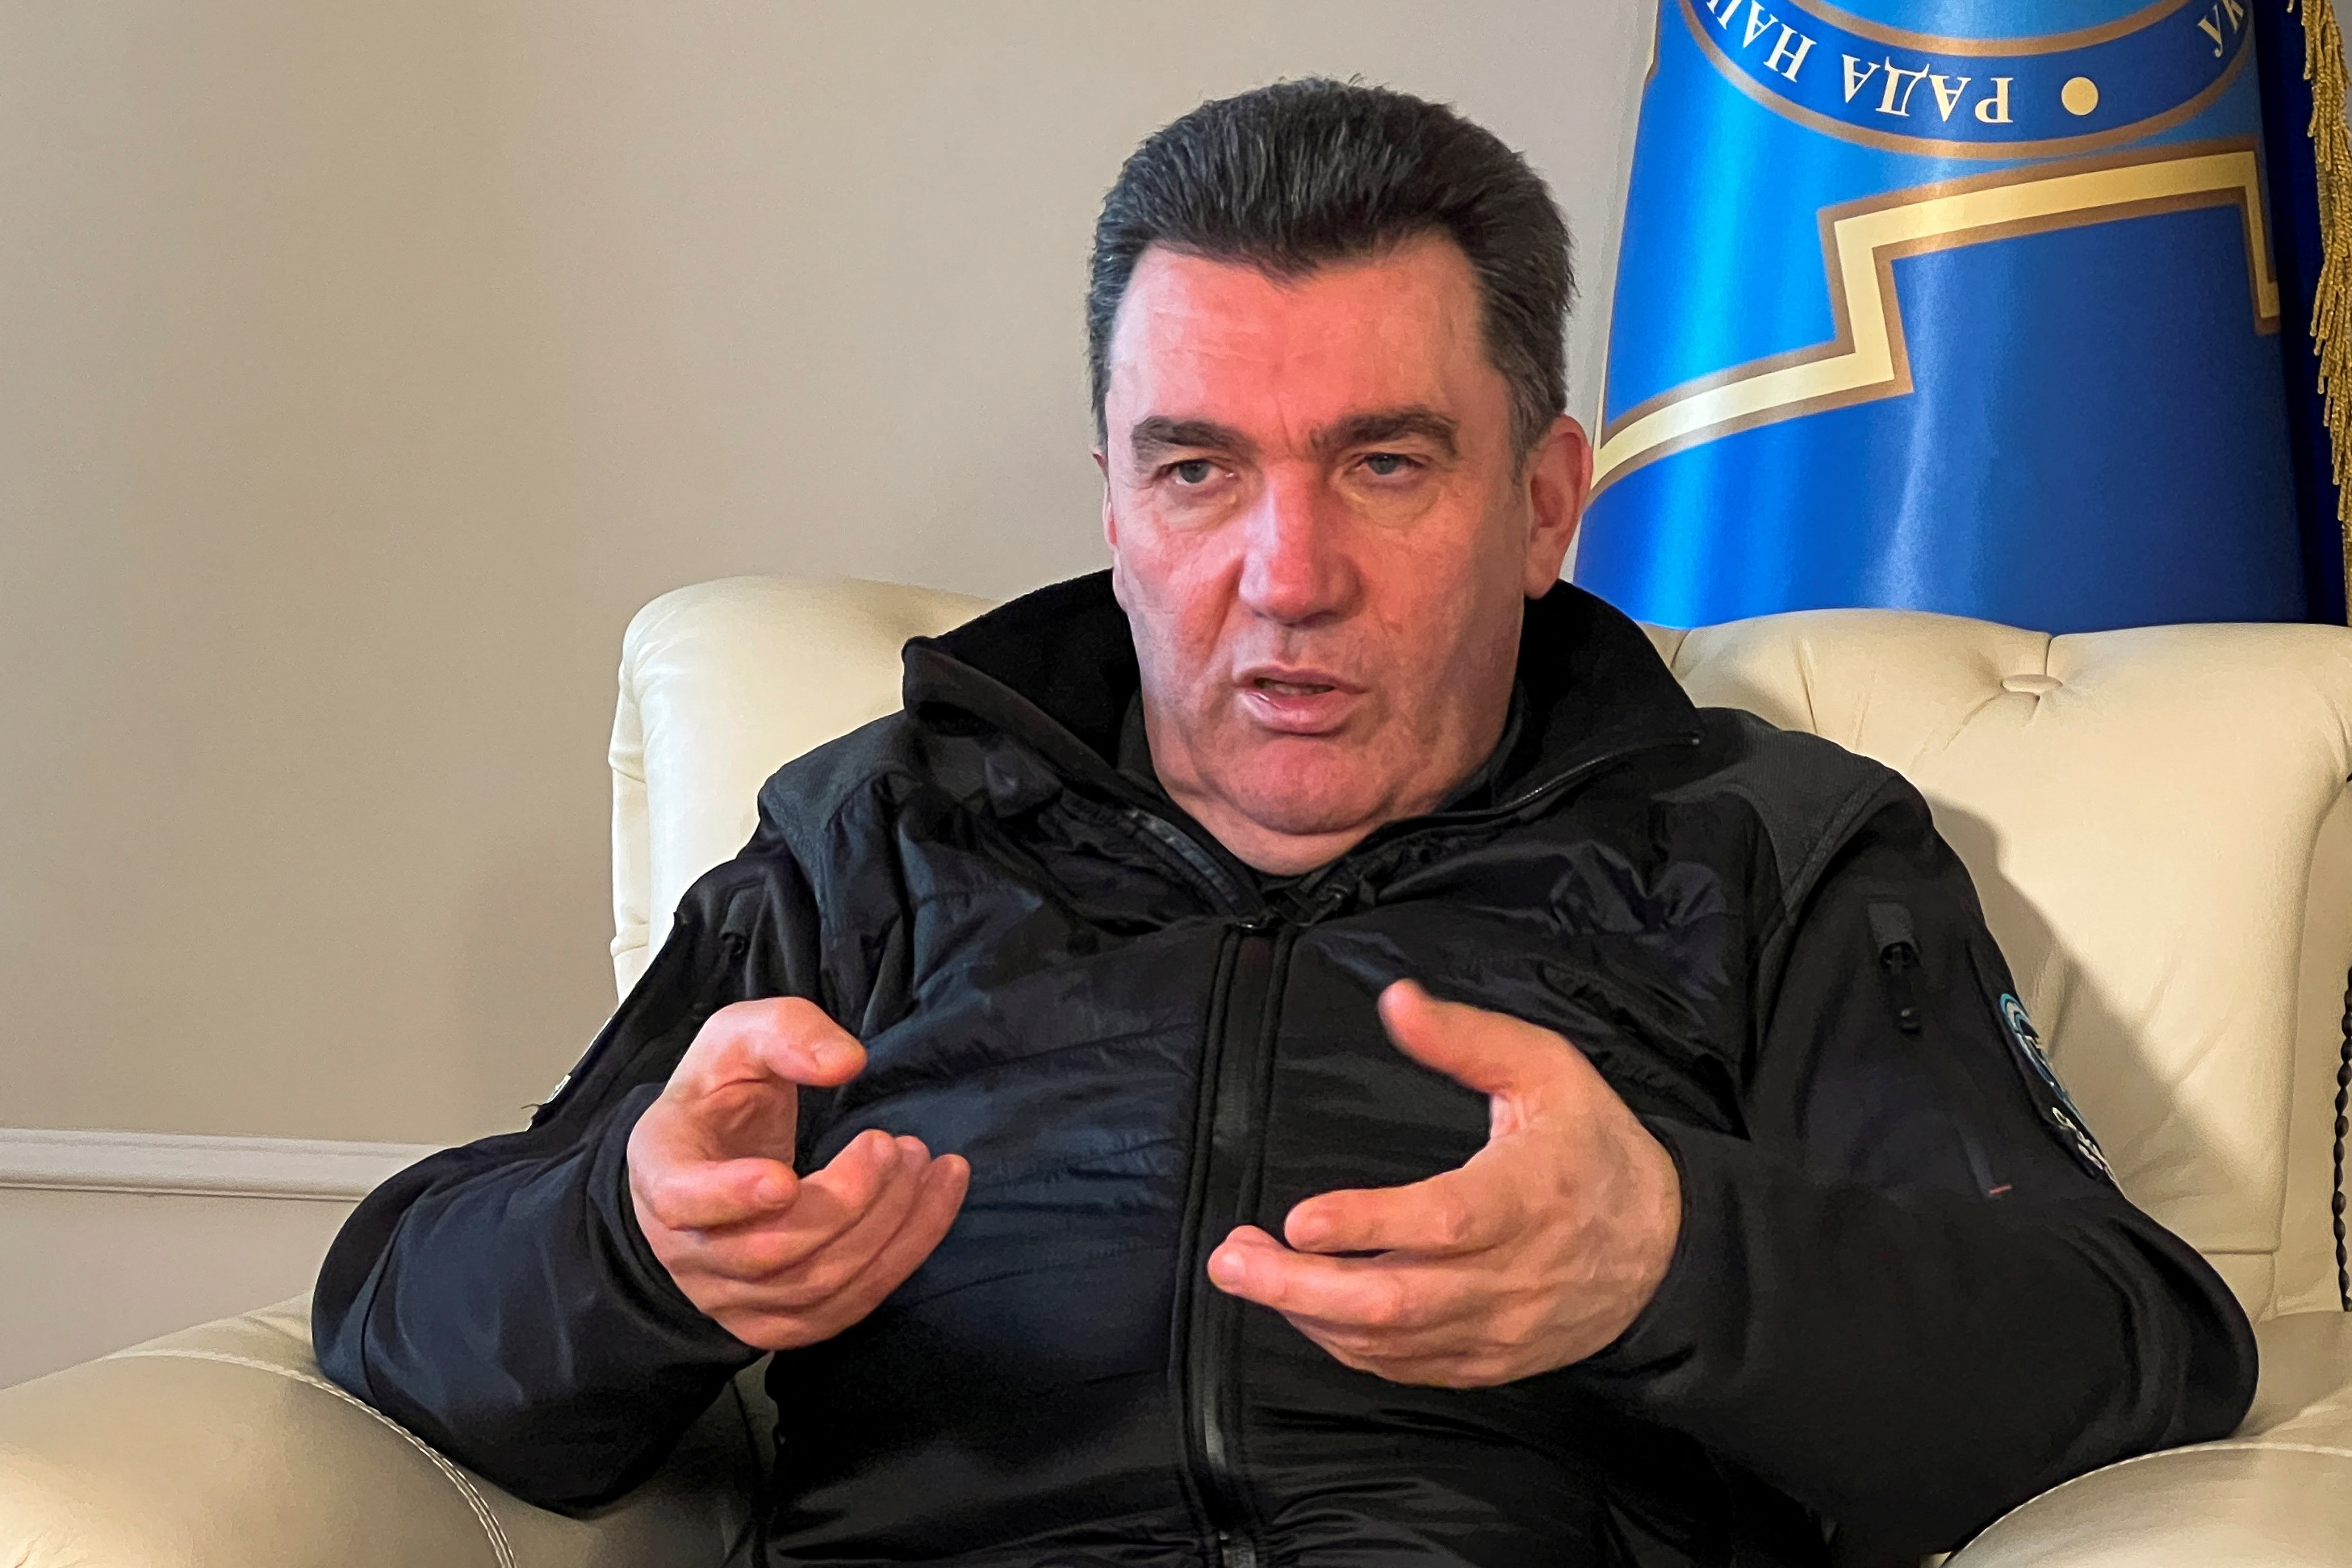 El secretario del Consejo de Defensa y Seguridad Nacional ucraniano, Oleksiy Danilov, informó además que algunas fuerzas mercenarias del grupo Wagner se estaban retirando de la ciudad de Bakhmut pero que no significa que dejarán de pelear contra su ejército. (REUTERS)